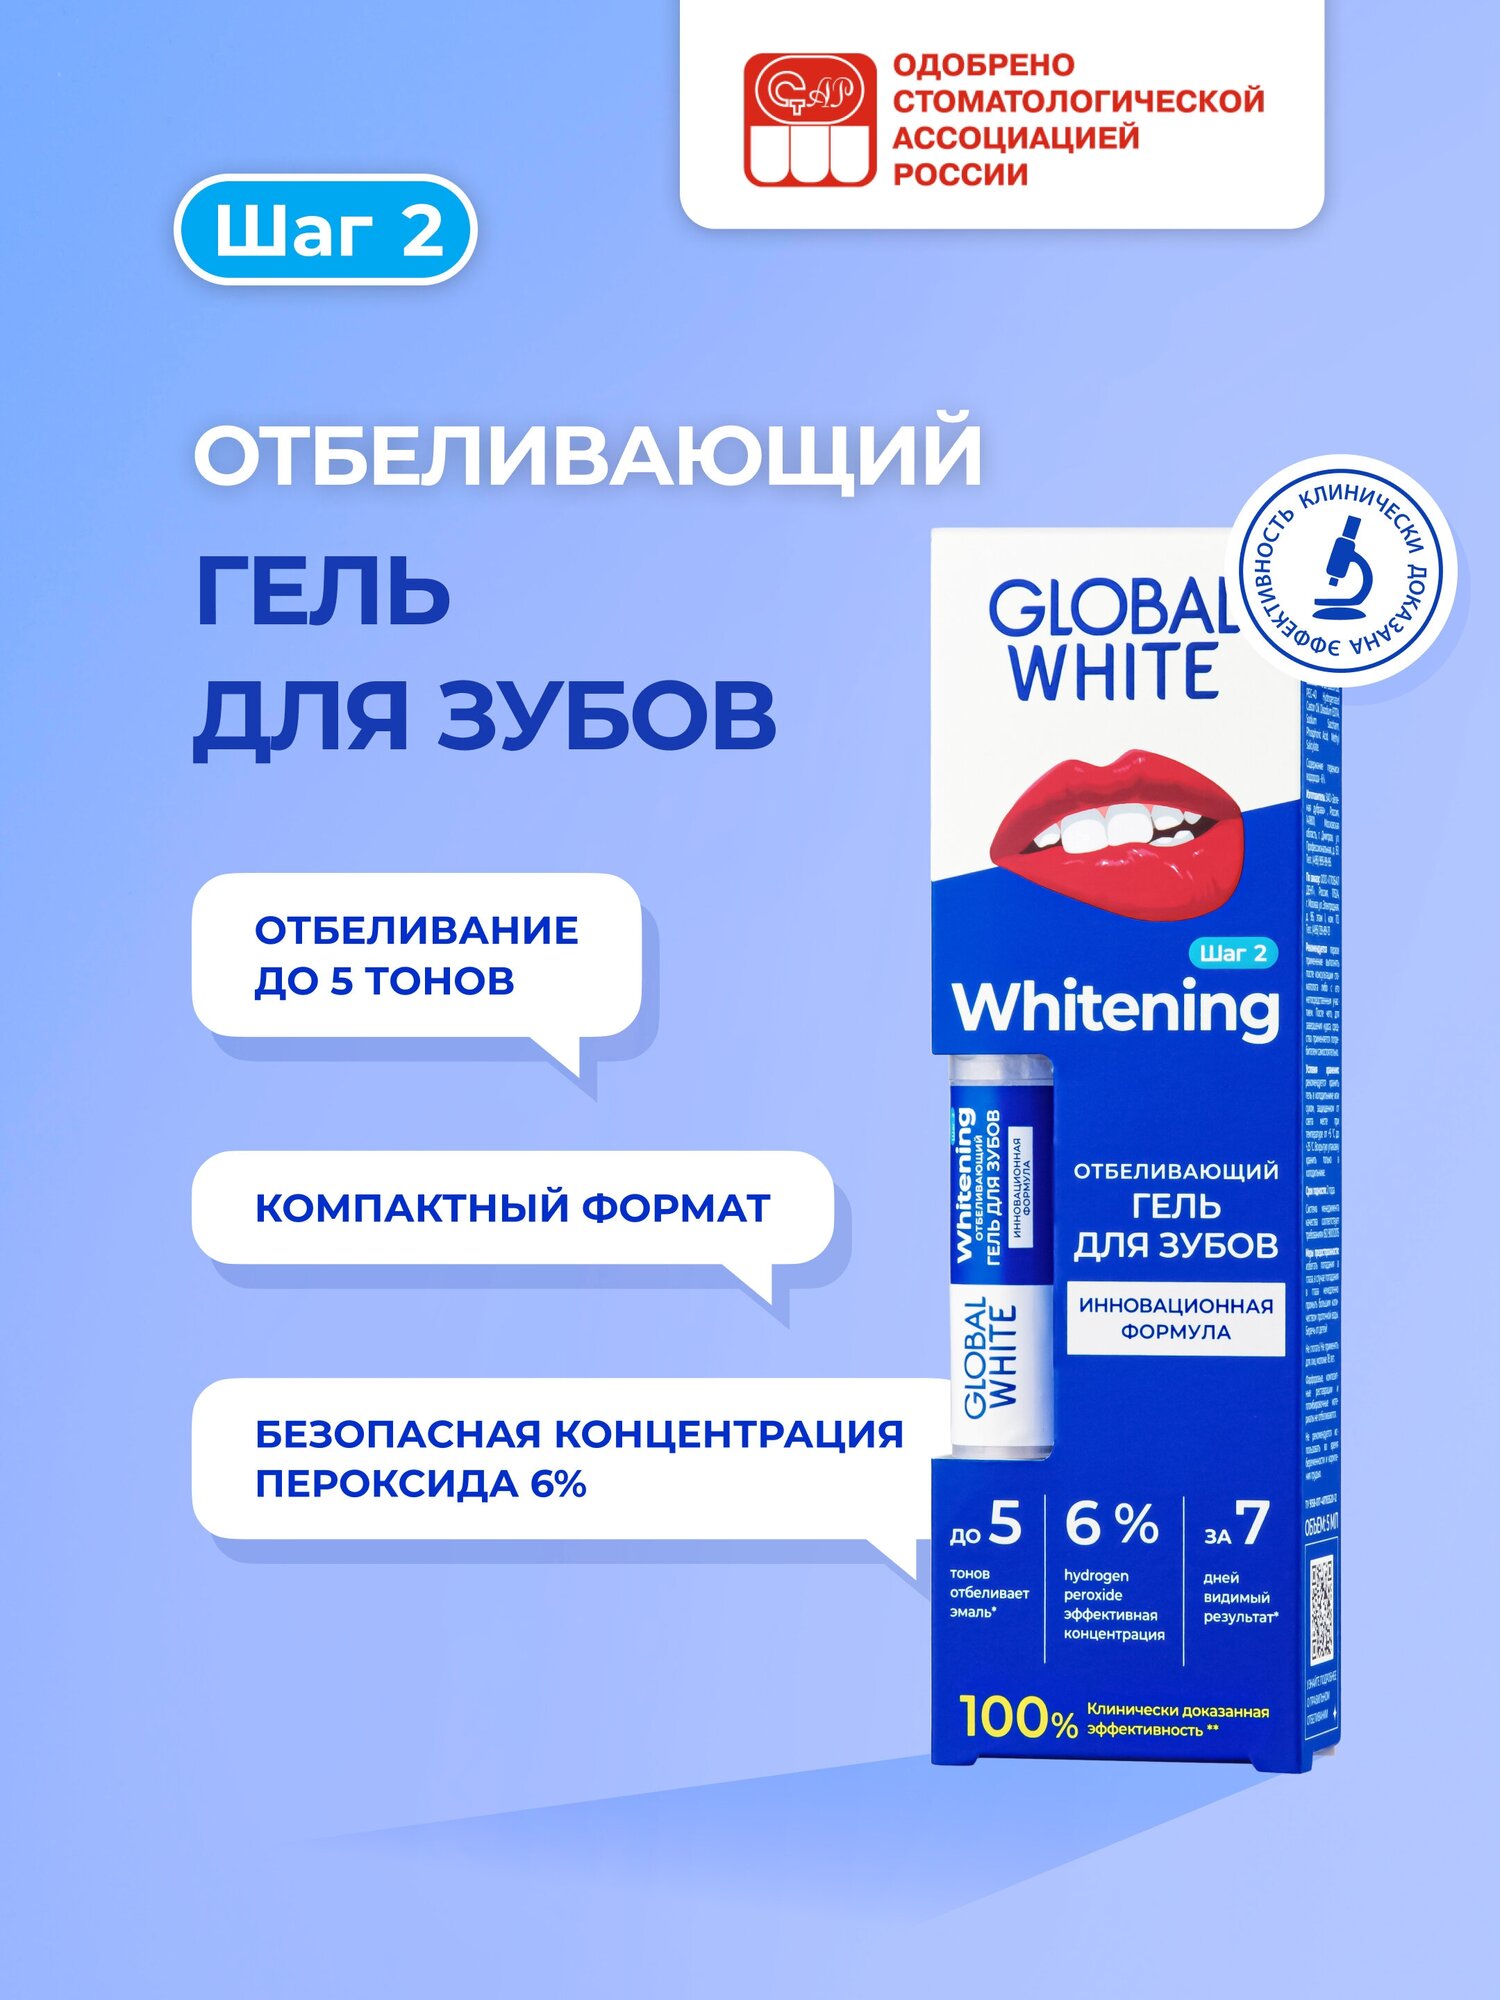       GLOBAL WHITE Whitening Gel for Teeth /5 